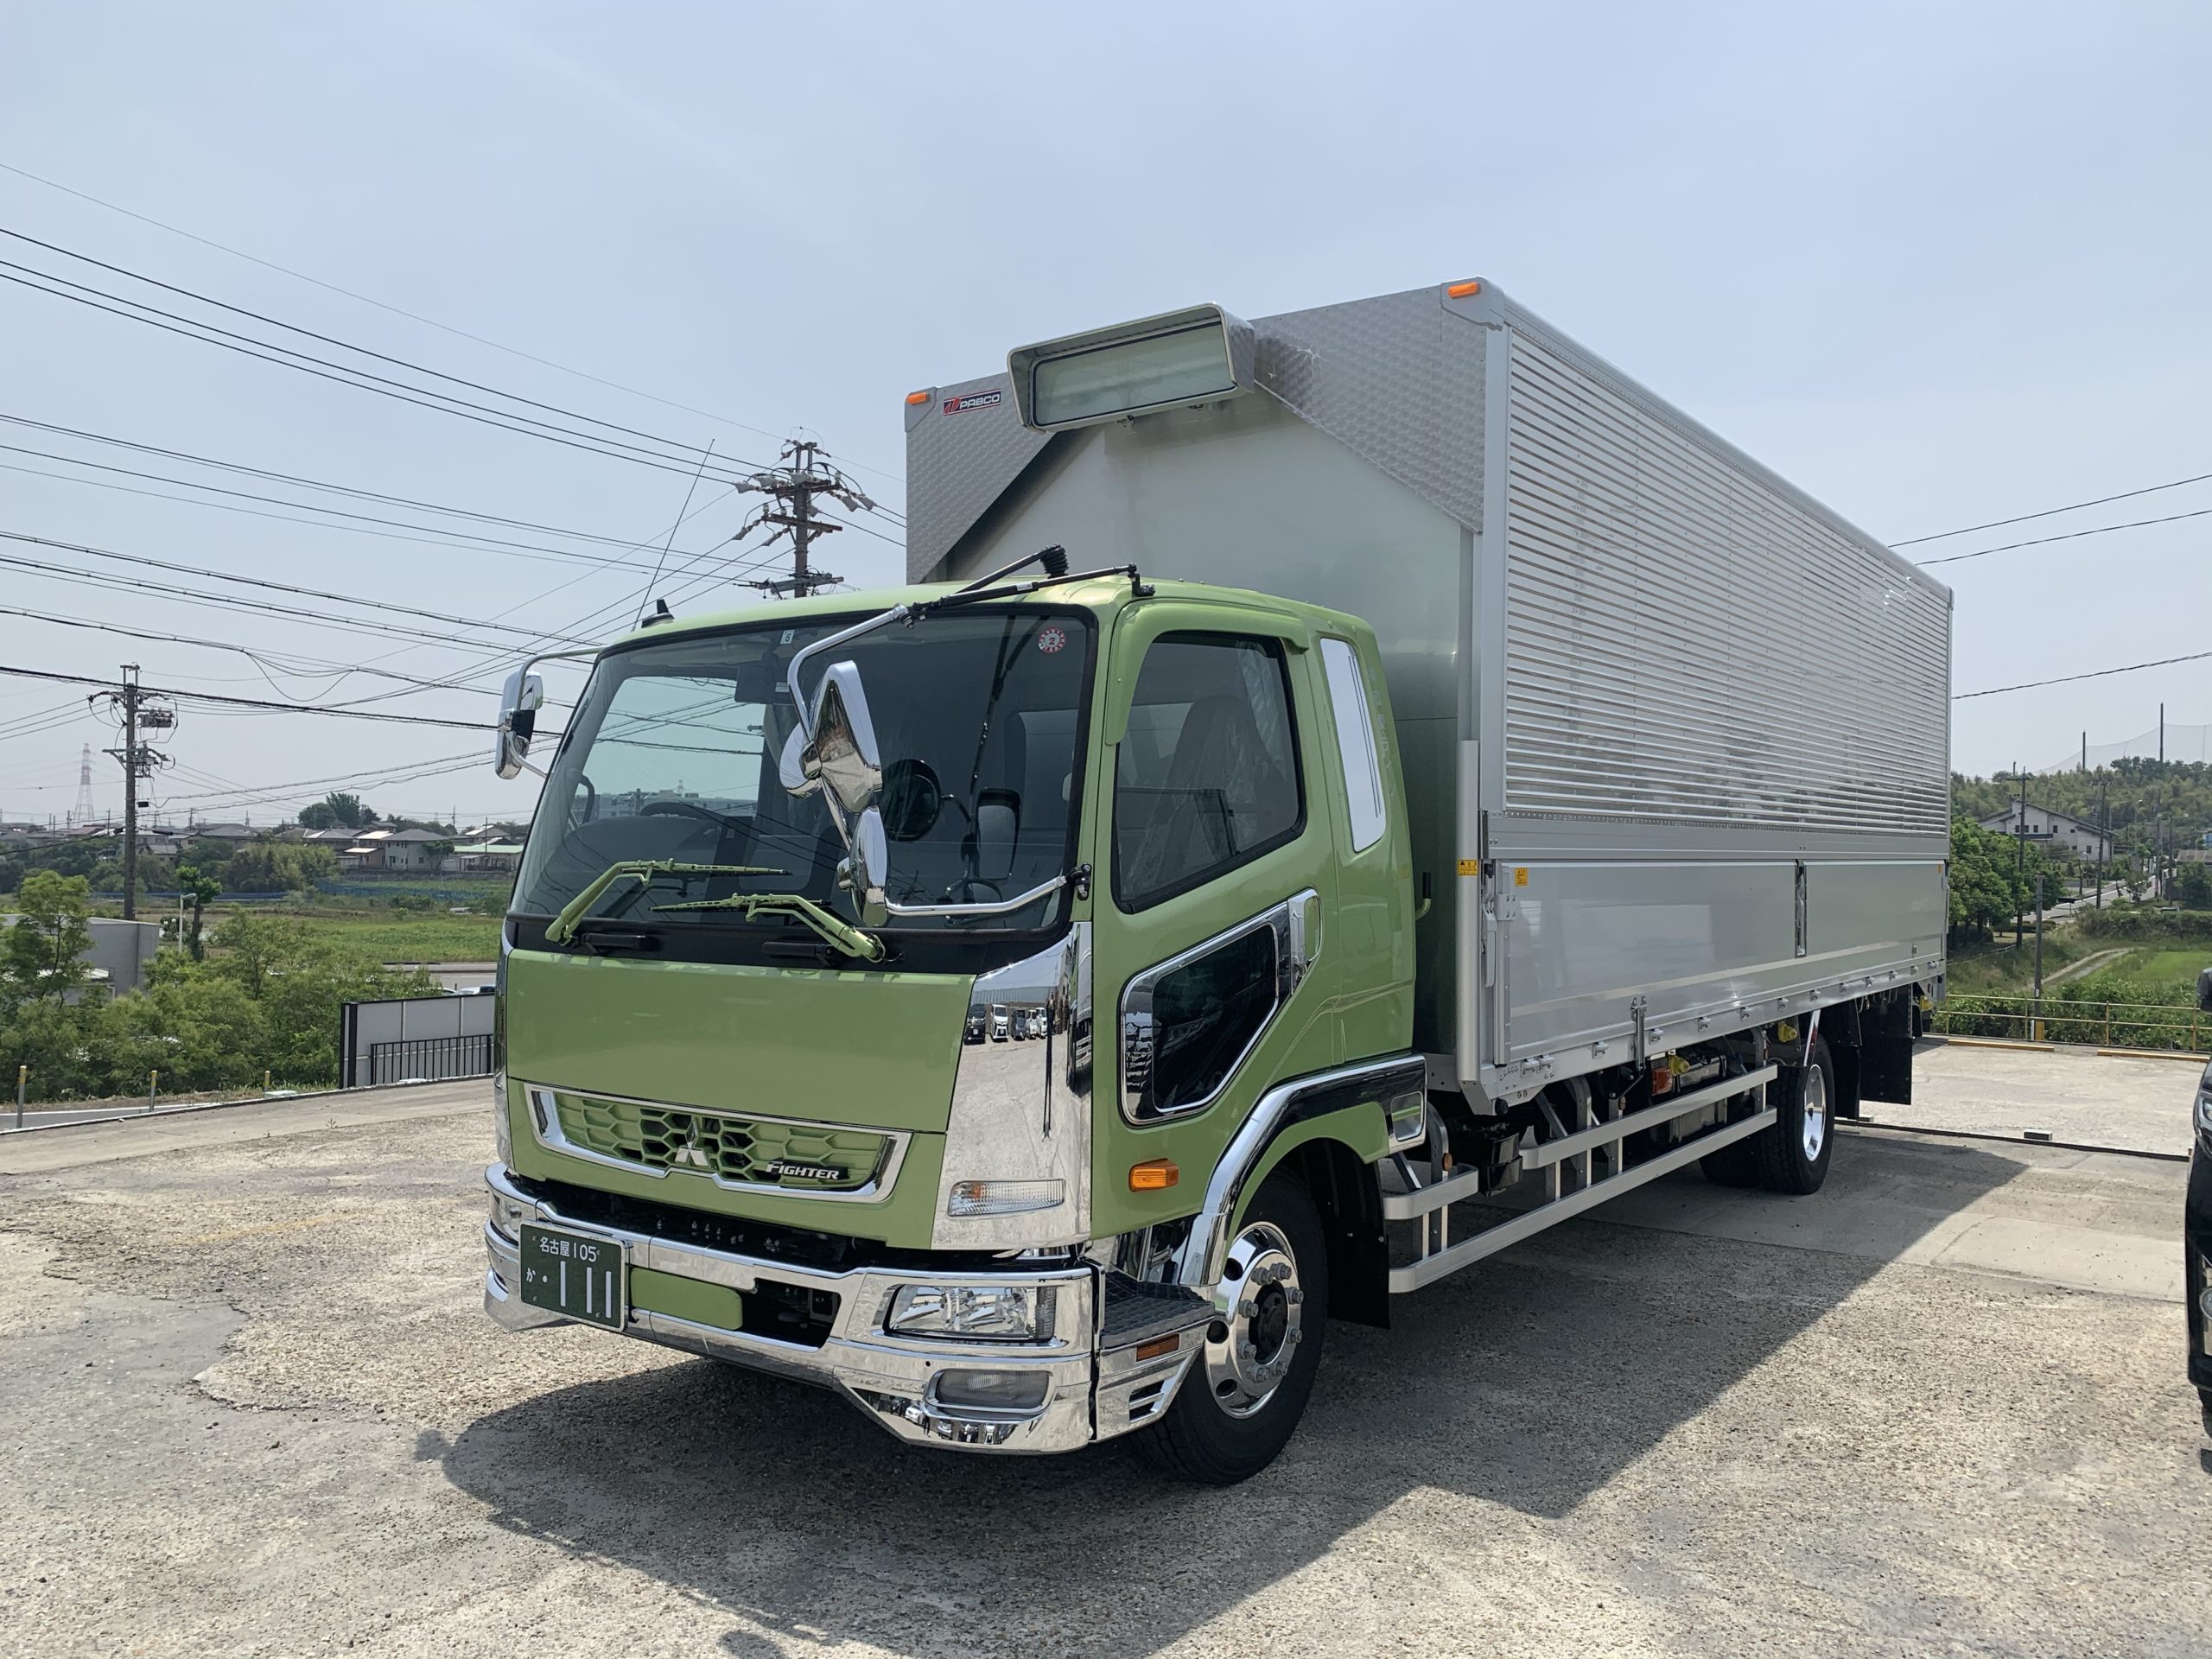 8トン車納車 愛知県大府市の運送会社は株式会社敬愛ライン 大型トラックドライバー求人中